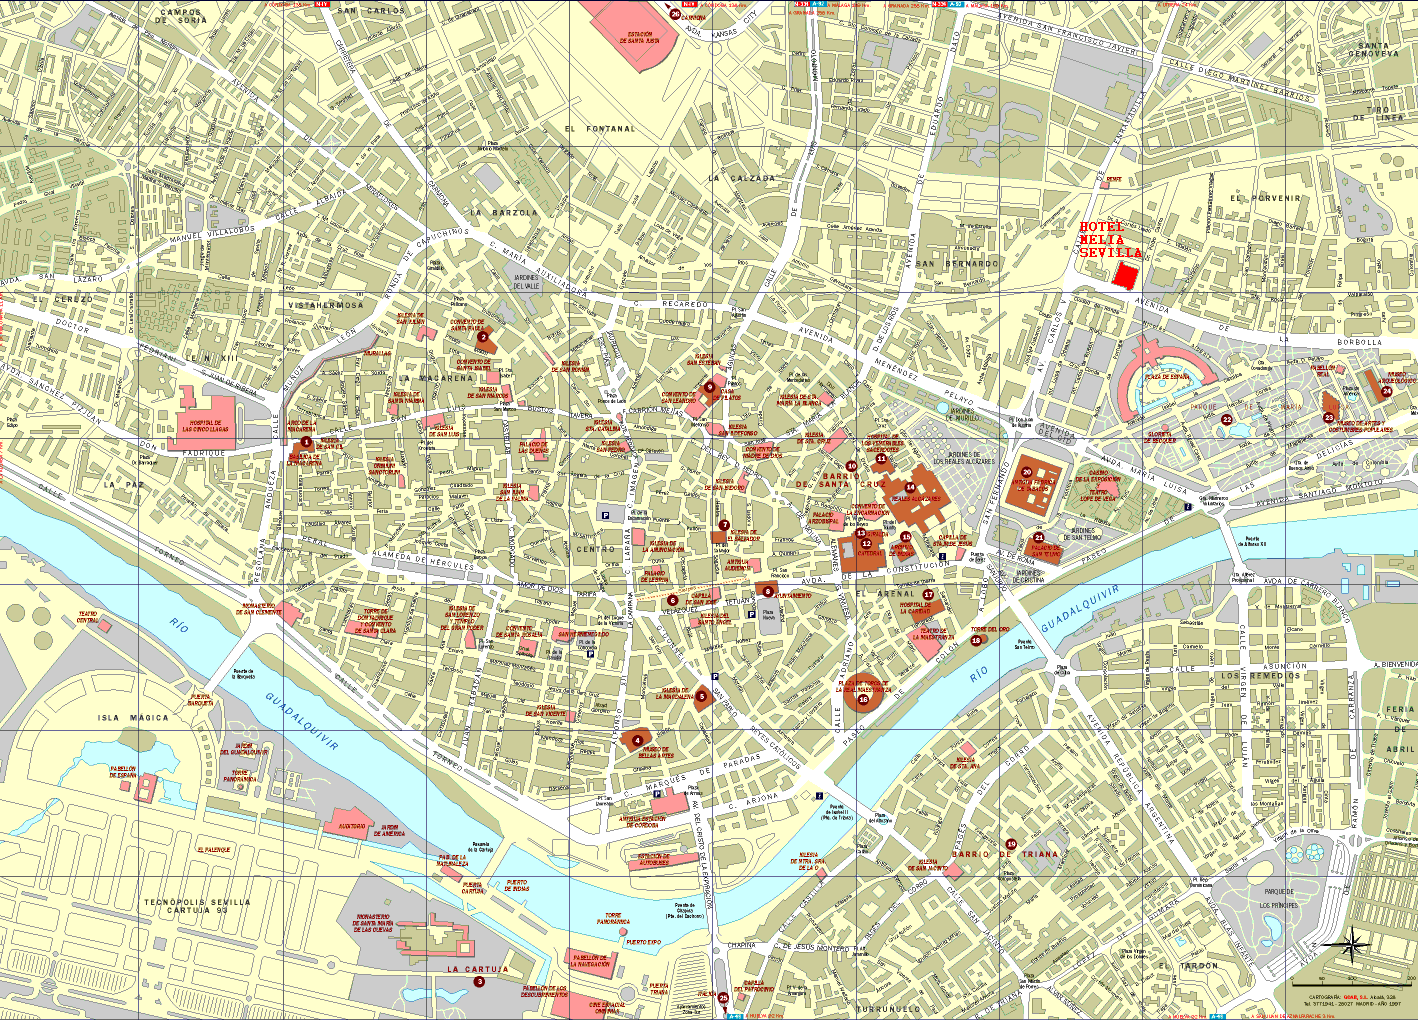 sevilla karta Sevilla Map   Detailed City and Metro Maps of Sevilla for Download  sevilla karta